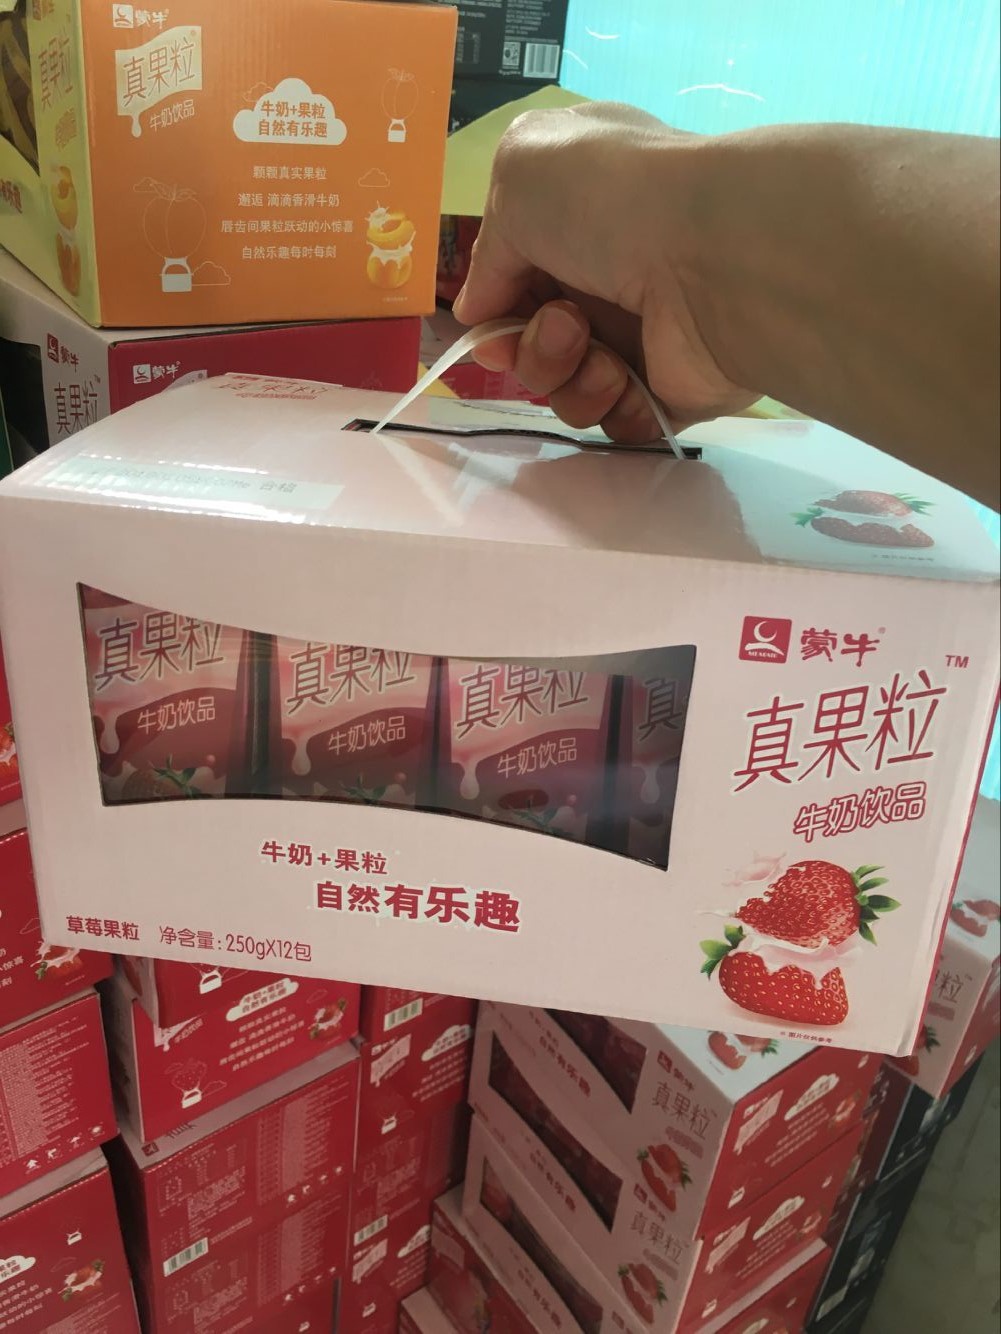 蒙牛真果粒 草莓黄桃芦荟蓝莓口味250mlx12盒 江浙沪皖包邮